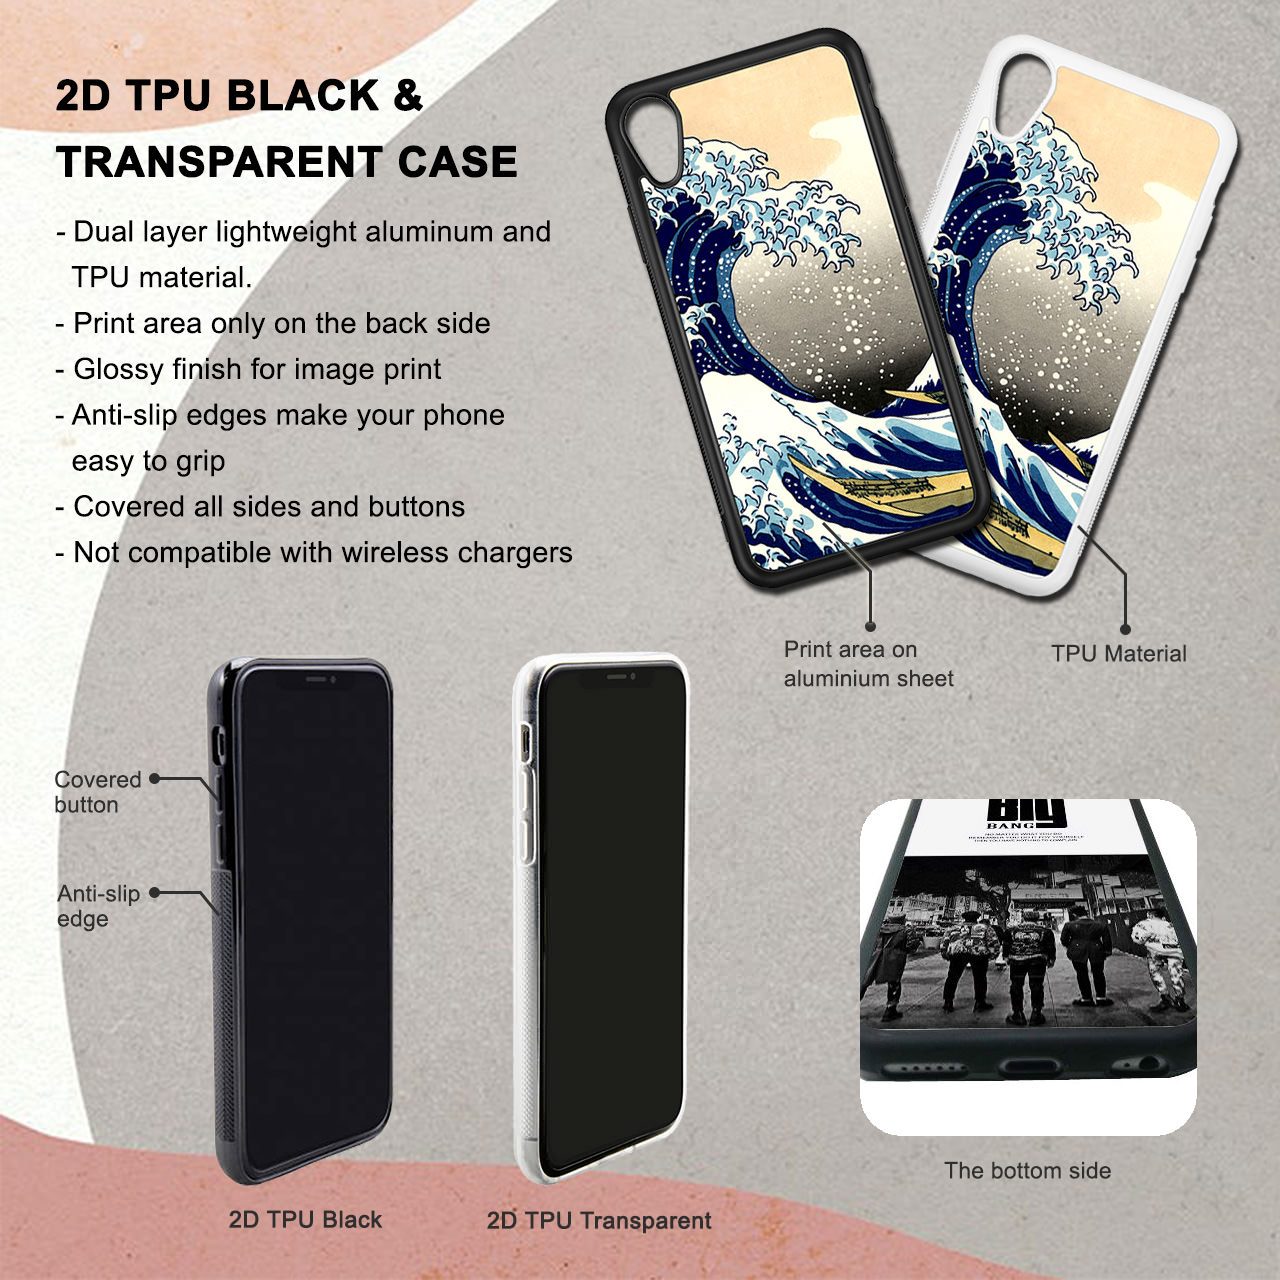 Zoro Half Smile iPhone 6 / 6s Plus Case